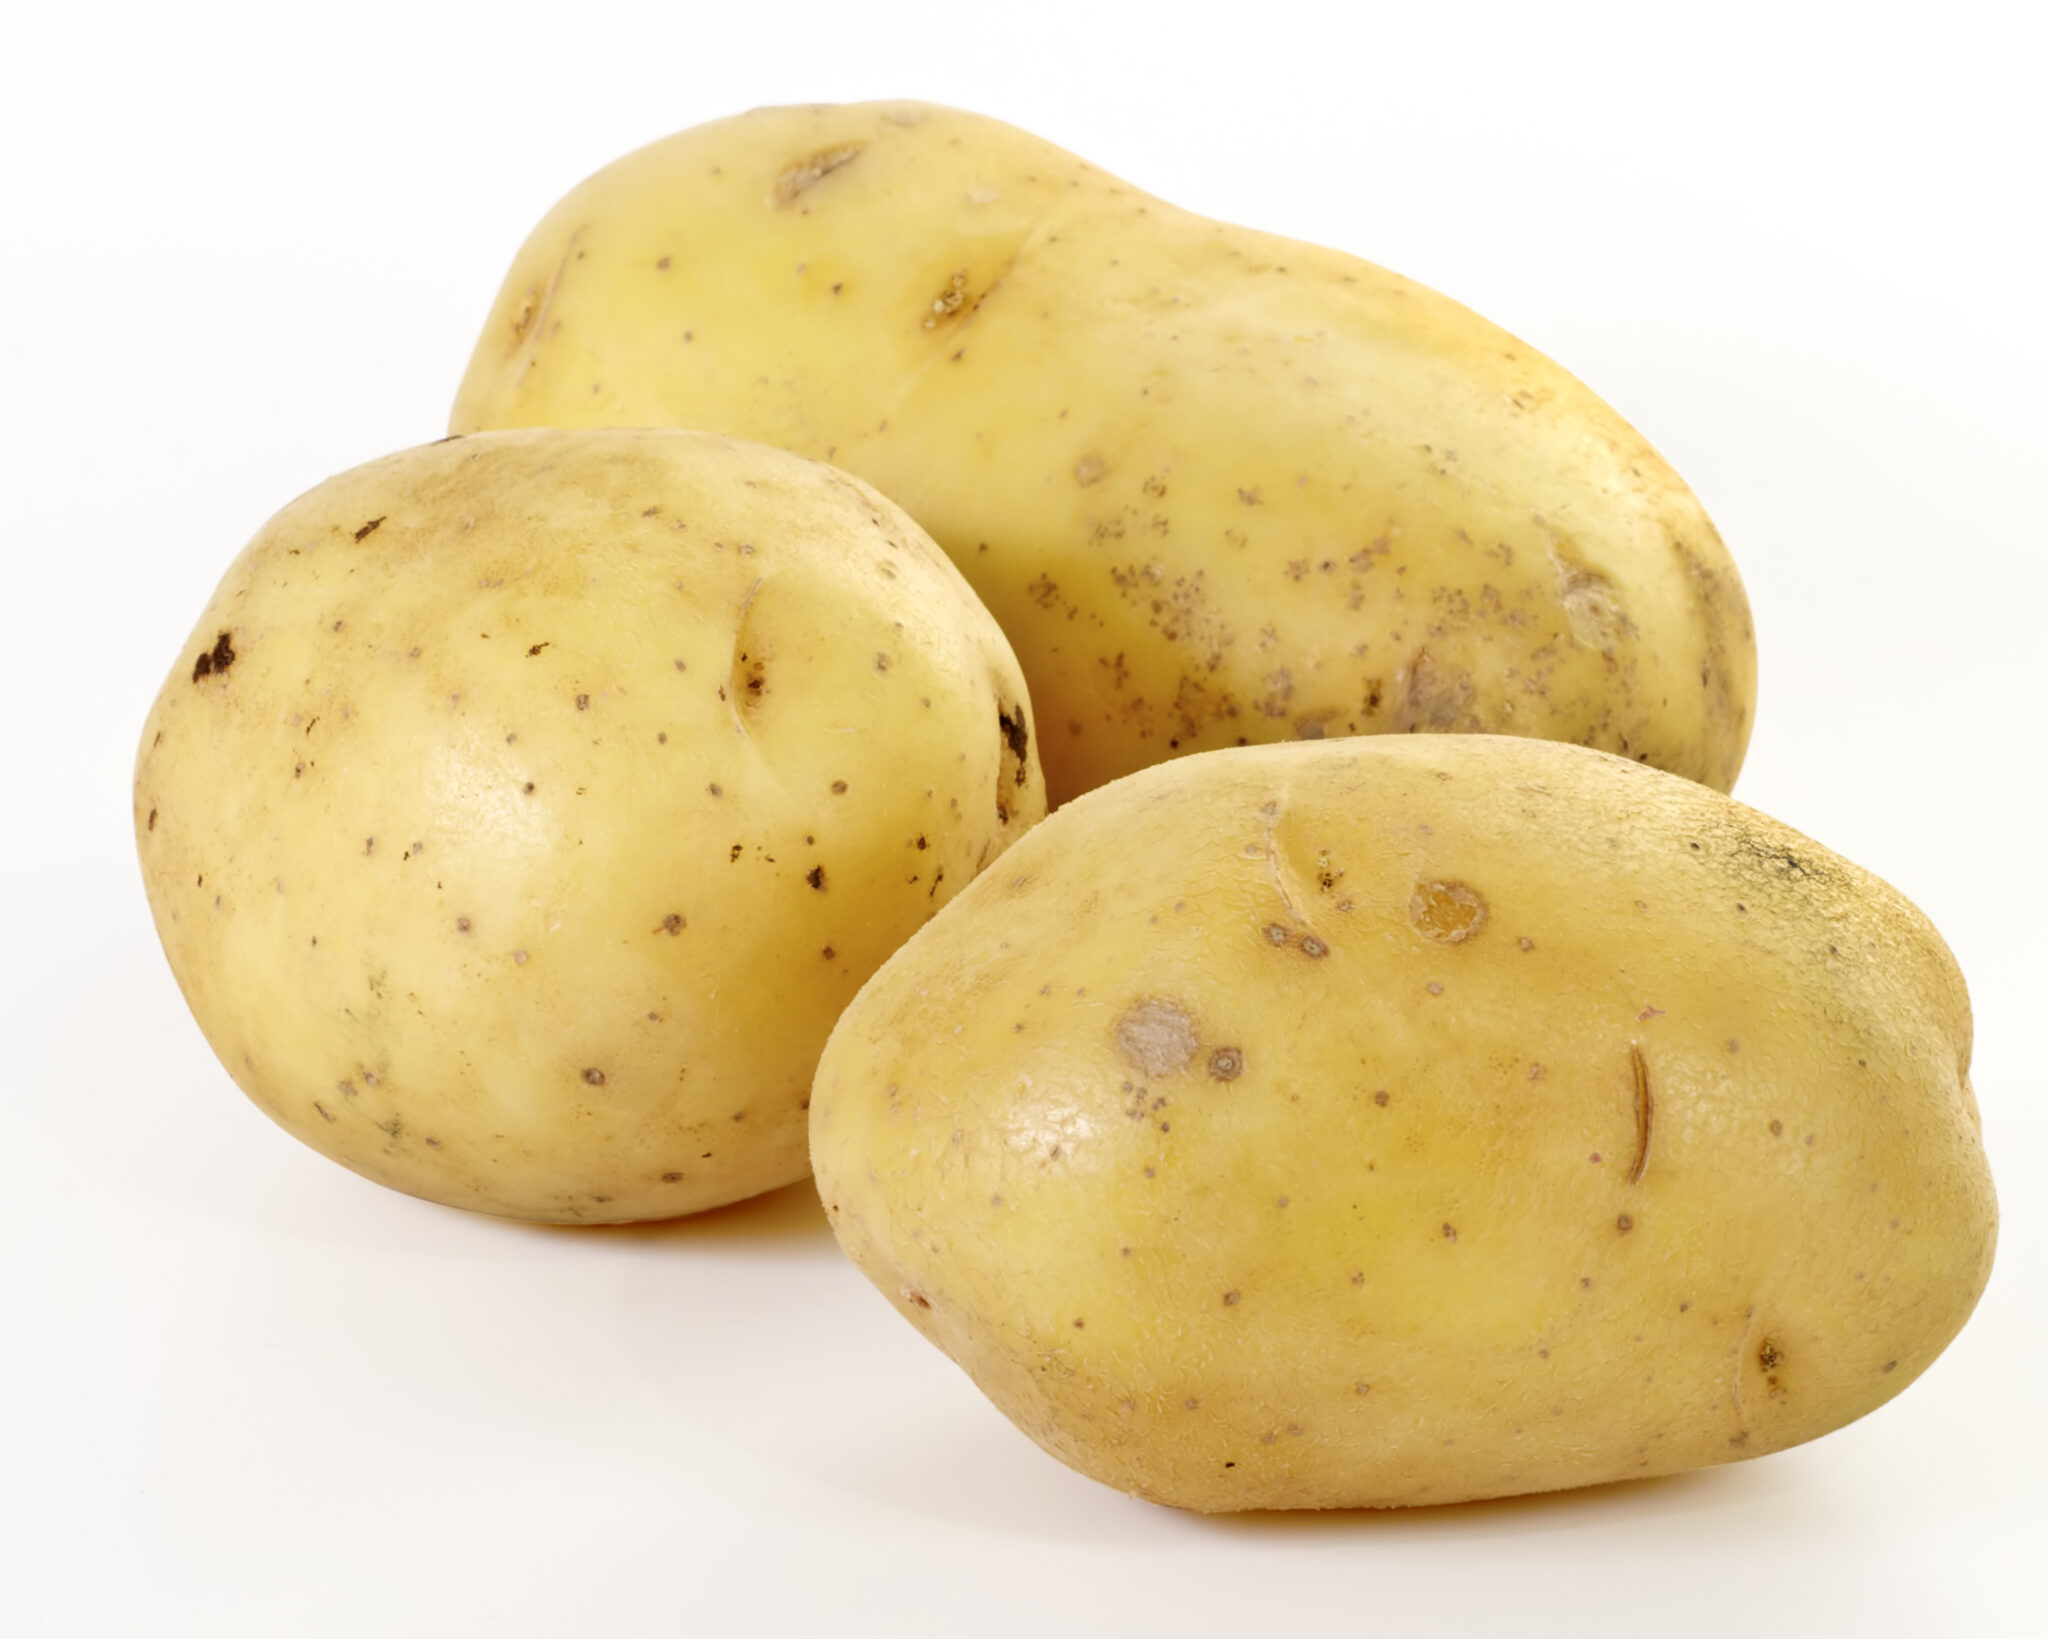 Potatoes picture. Картошка с овощами. Картофель карточка для детей. Картофель на белом фоне. Картошка для детей.